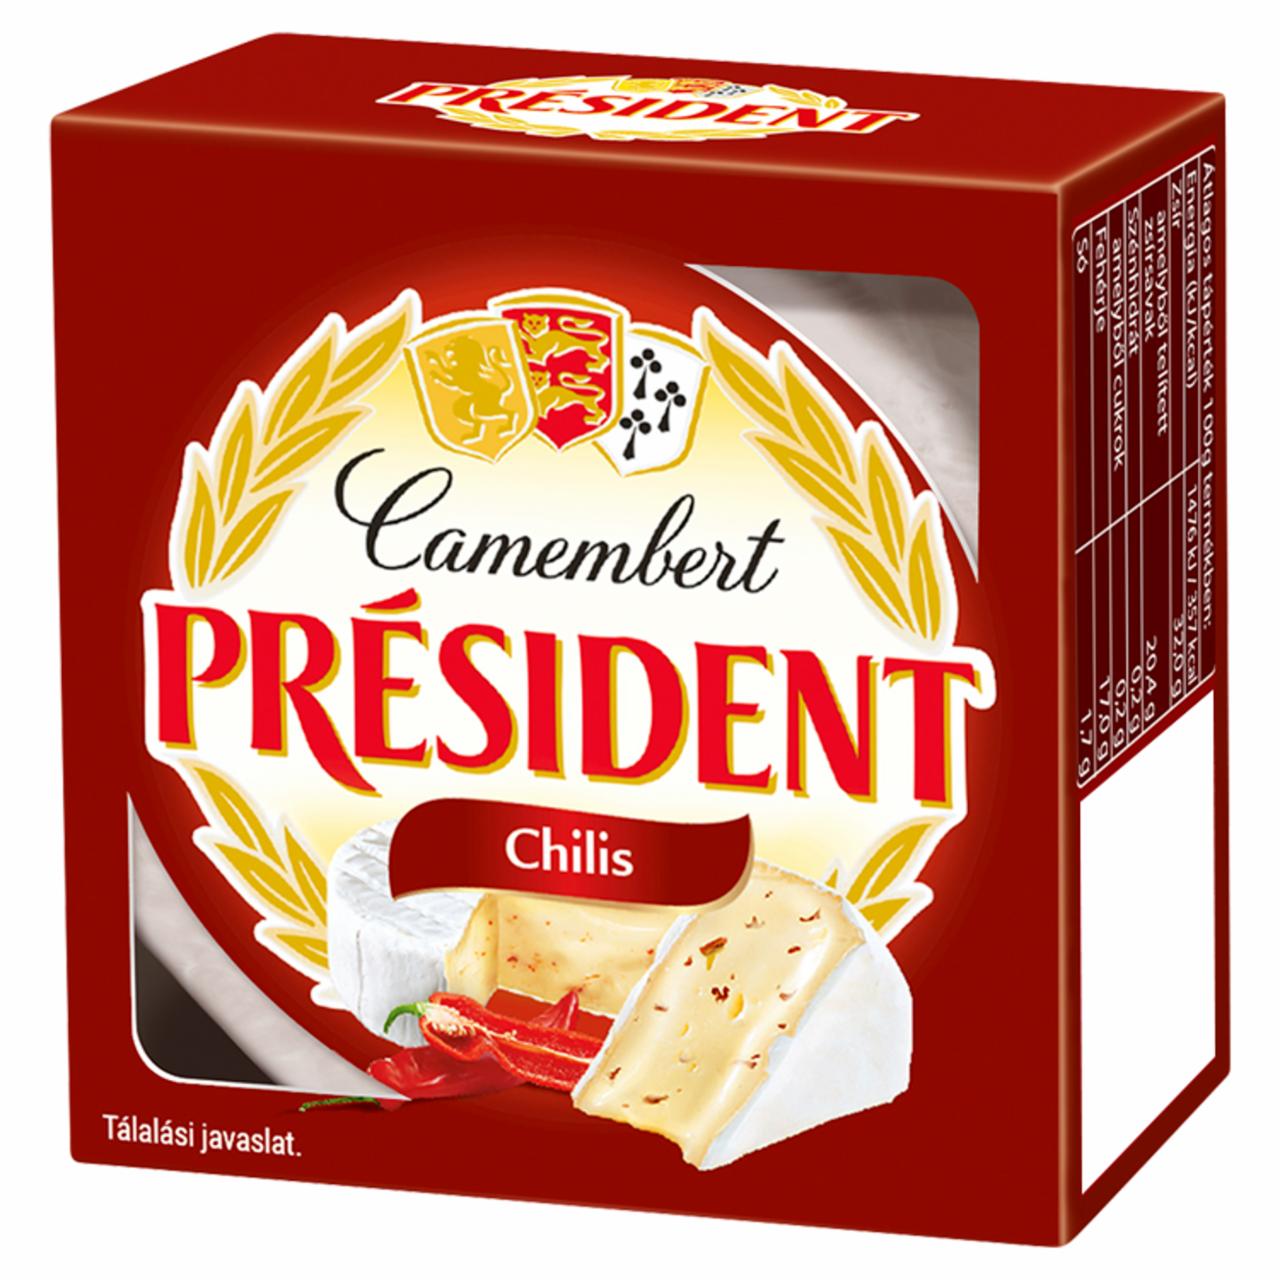 Képek - Président Camembert chilis zsírdús lágy sajt 90 g